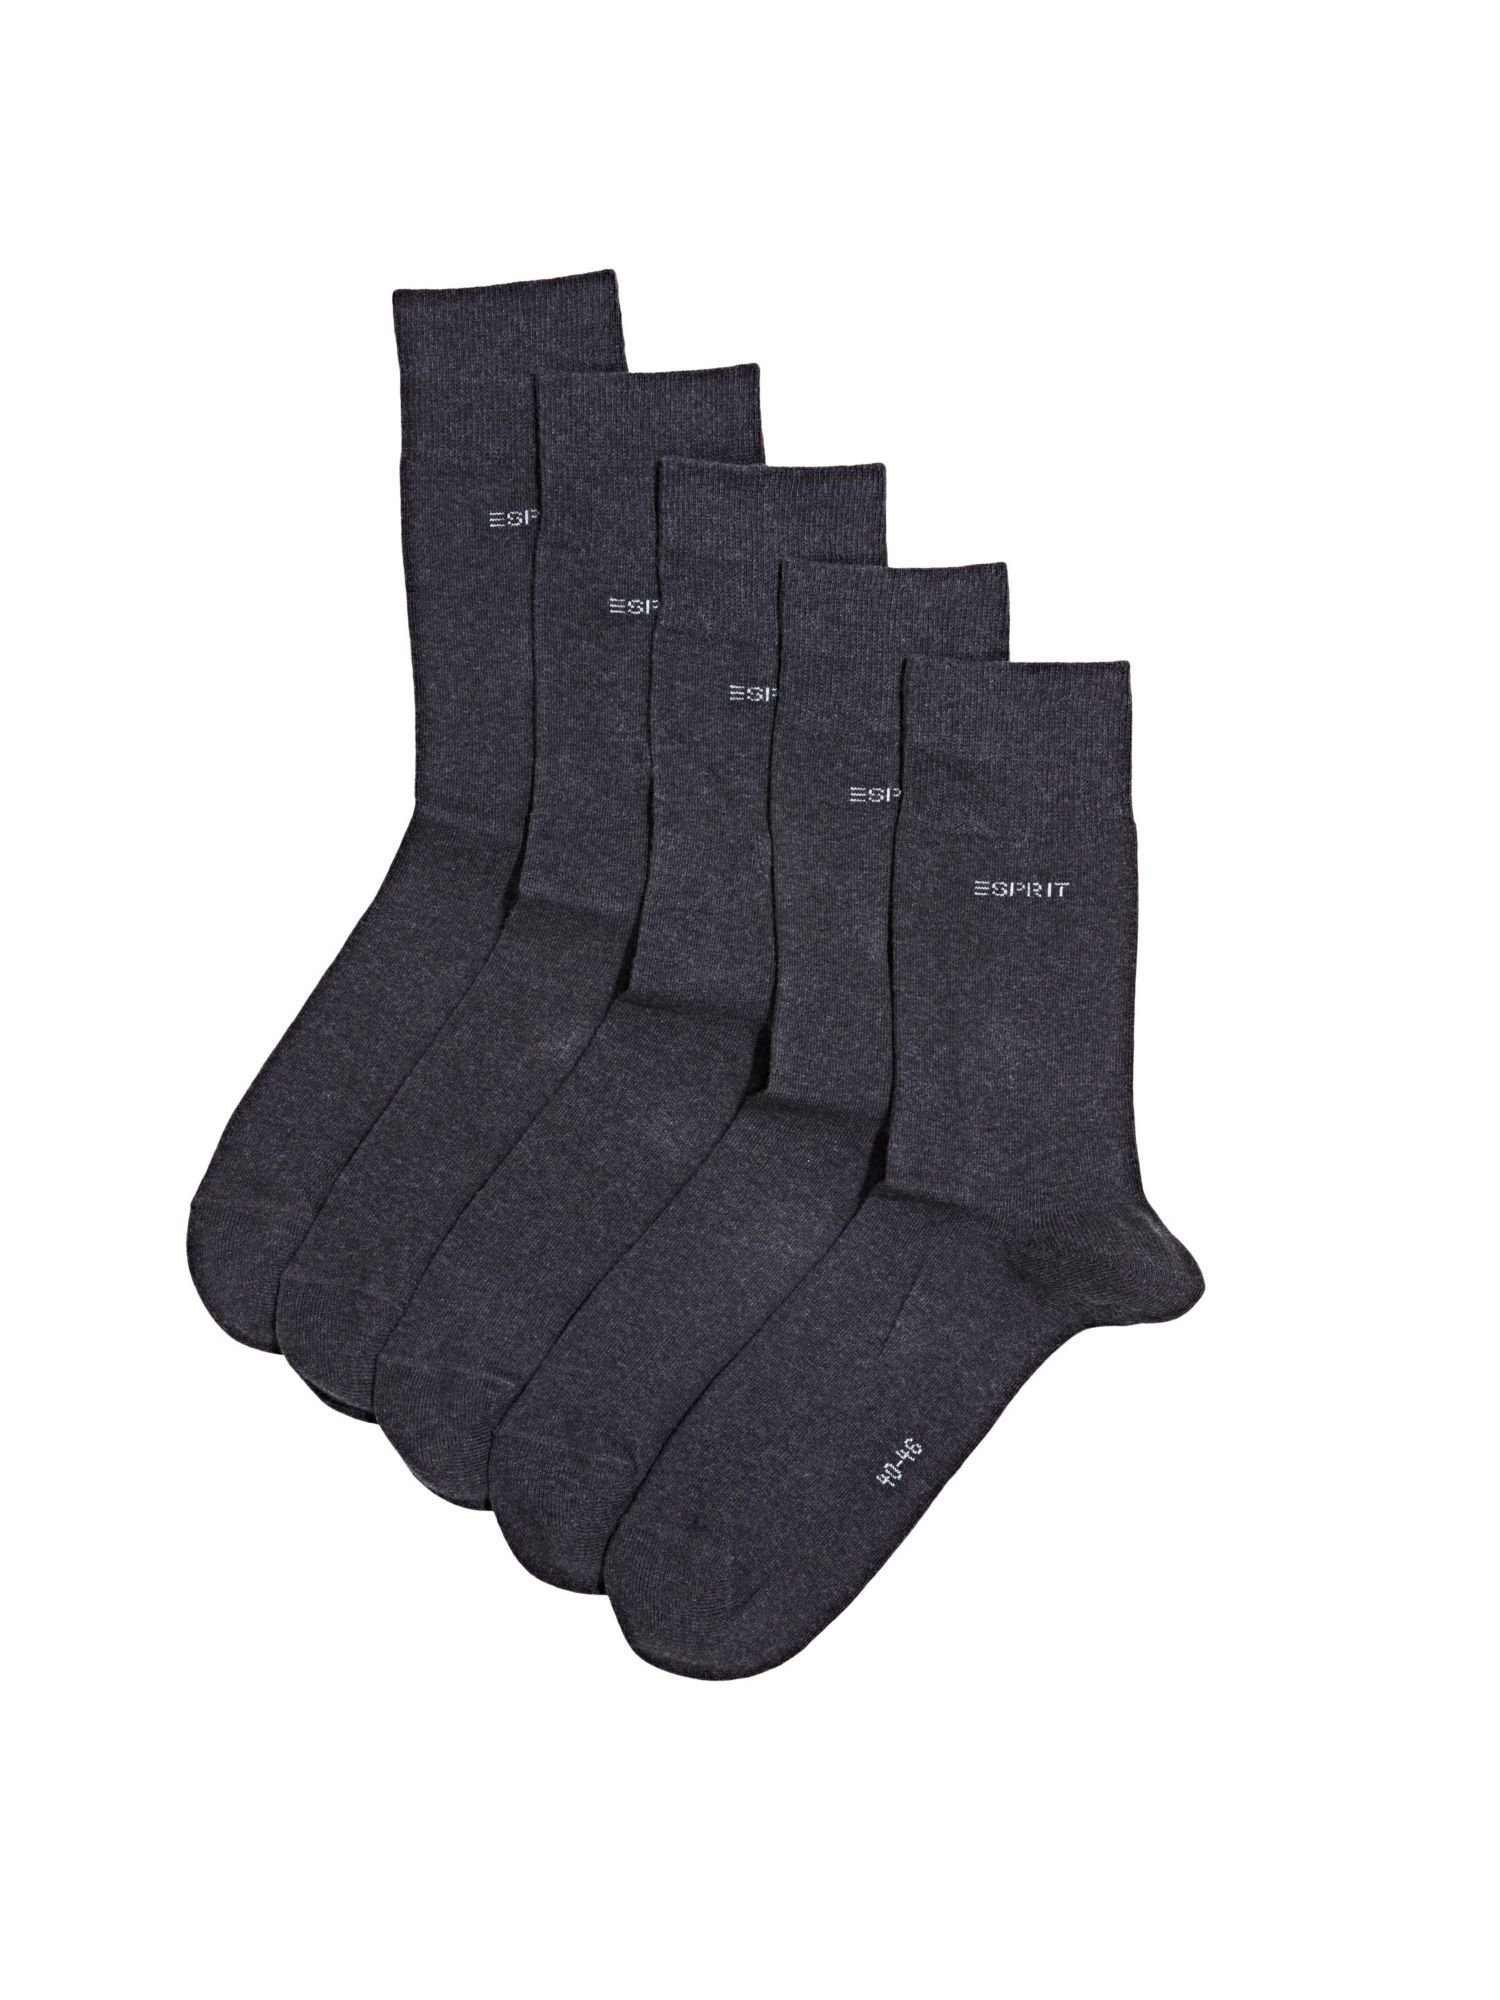 Esprit Socken 5er-Pack ANTHRACITE MELANGE Bio-Baumwollmix Socken